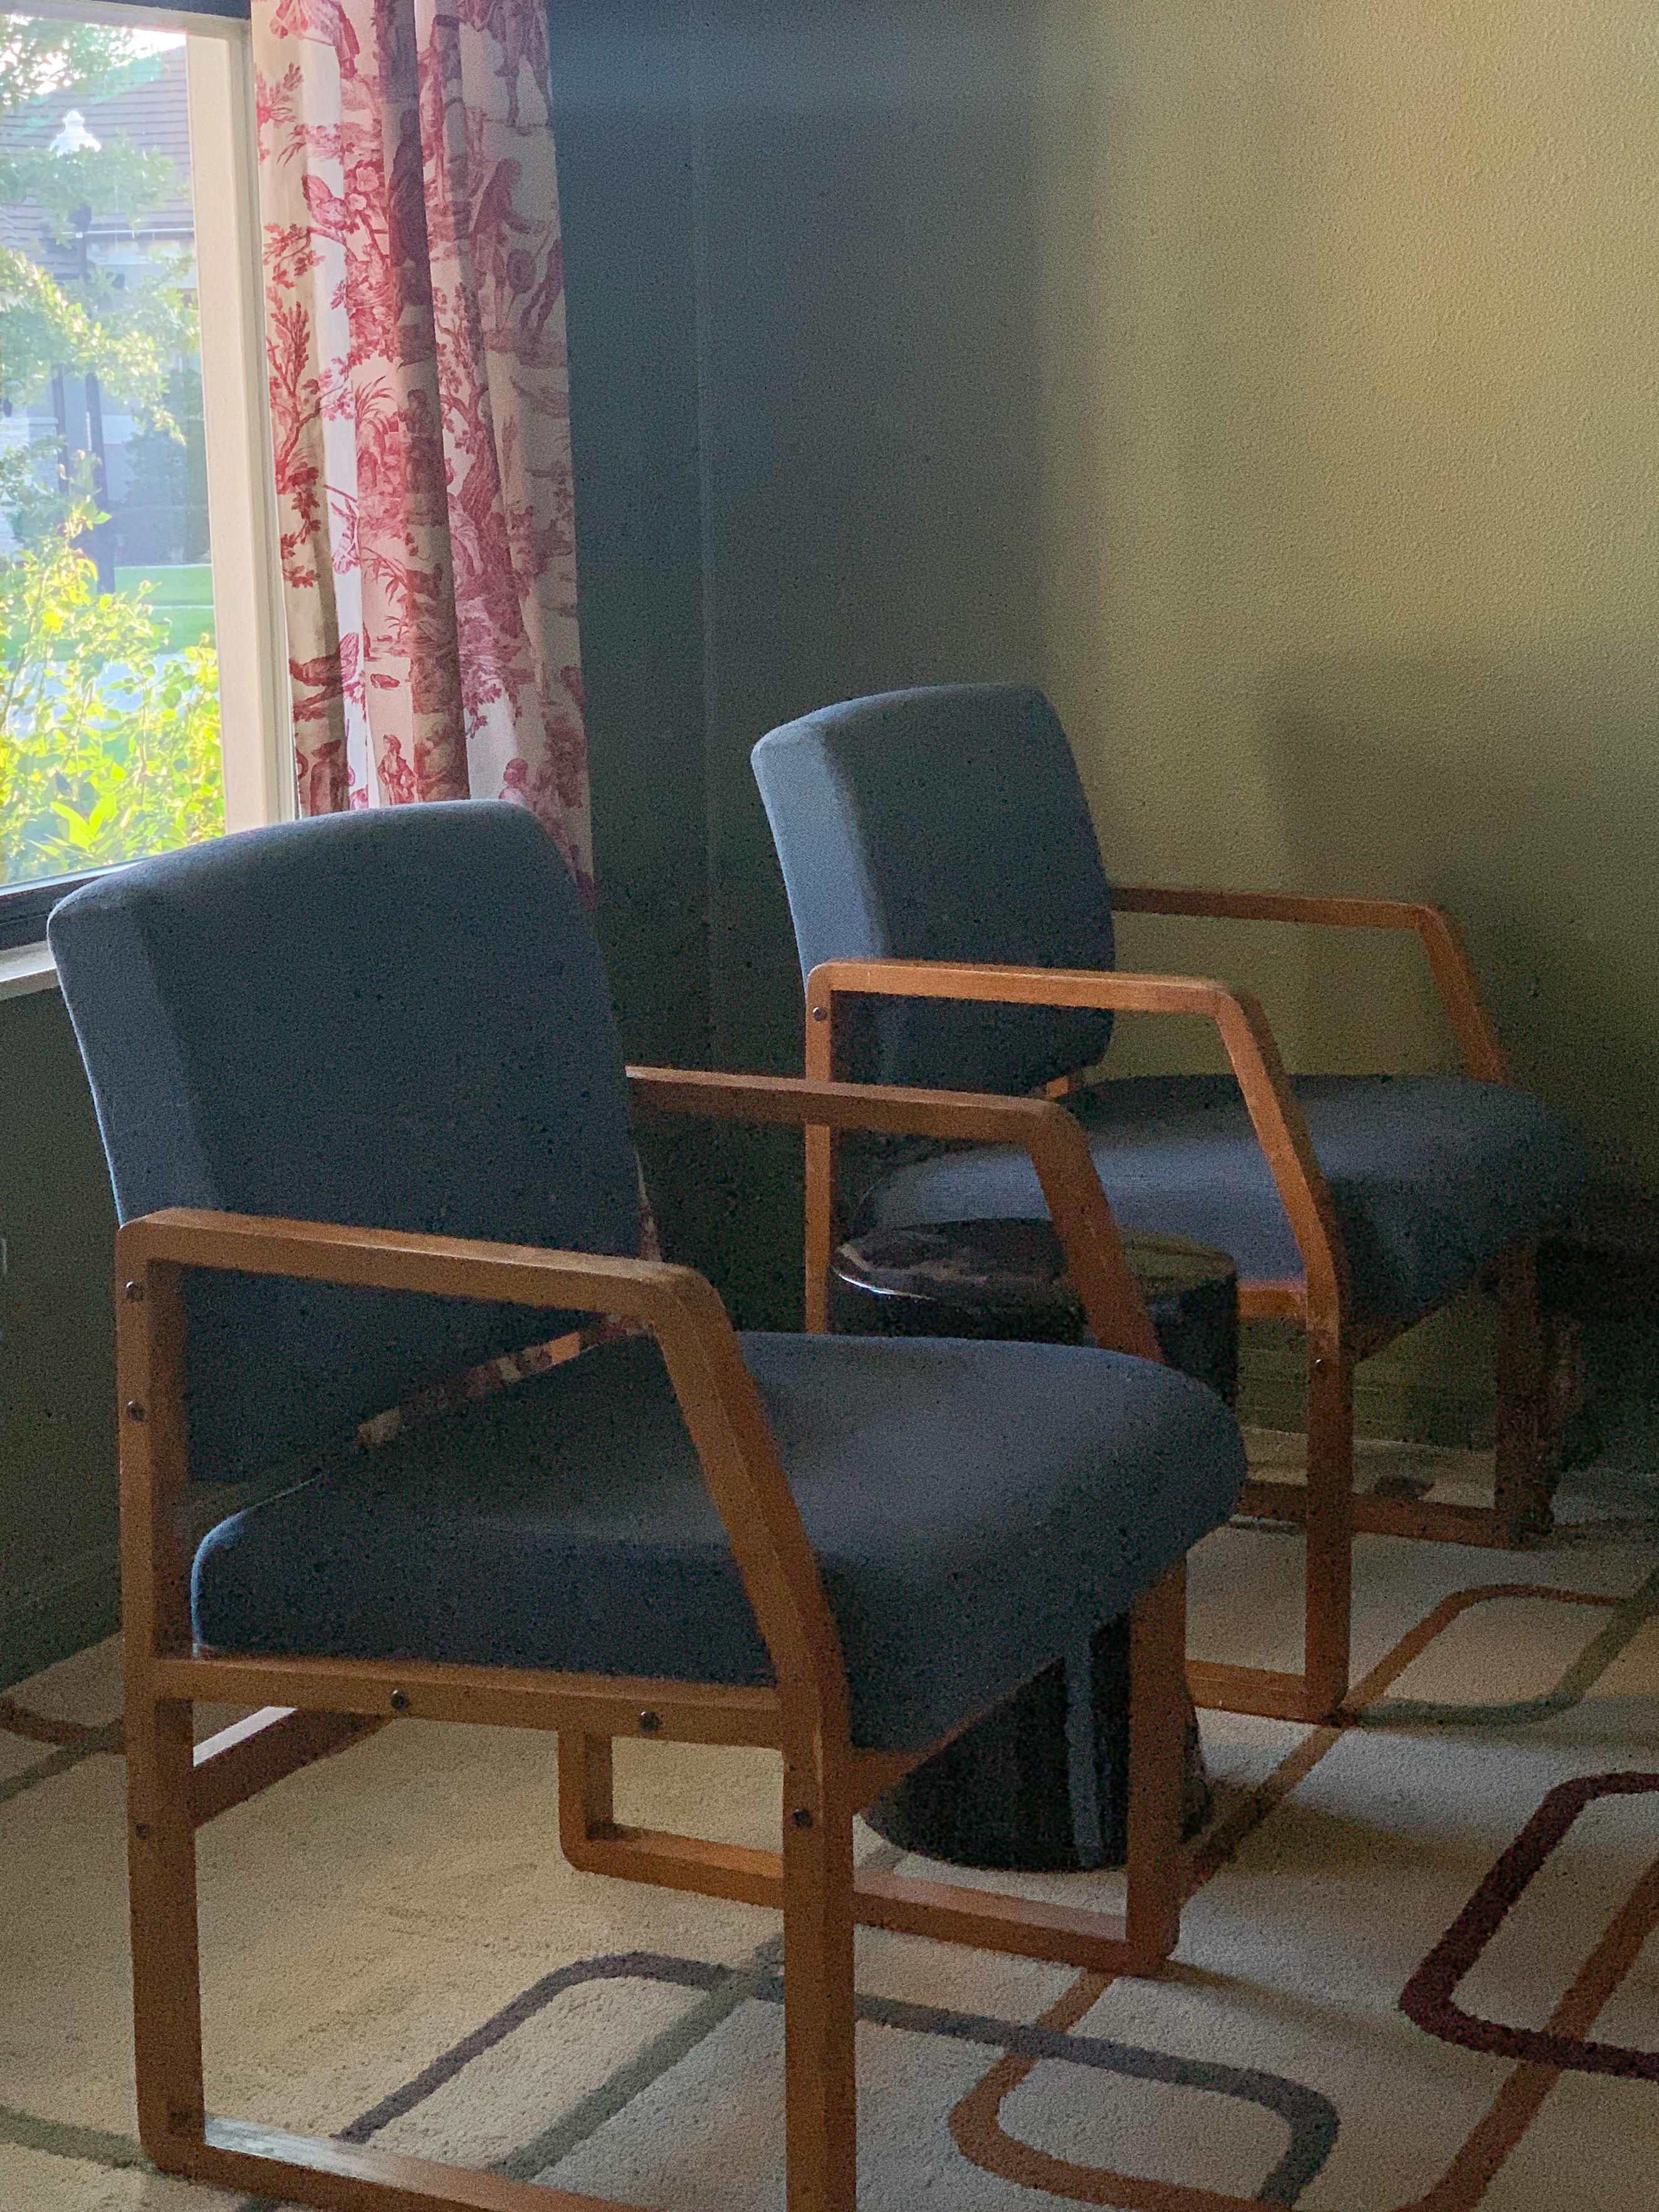 Chaise géométrique de style Bentwood du milieu du siècle, fabriquée sur mesure par HighPoint Furniture NC. Structure angulaire en noyer et rembourrage en tissu BLEU D'ACIER soutenu par une mousse de densité moyenne de haute qualité. Production